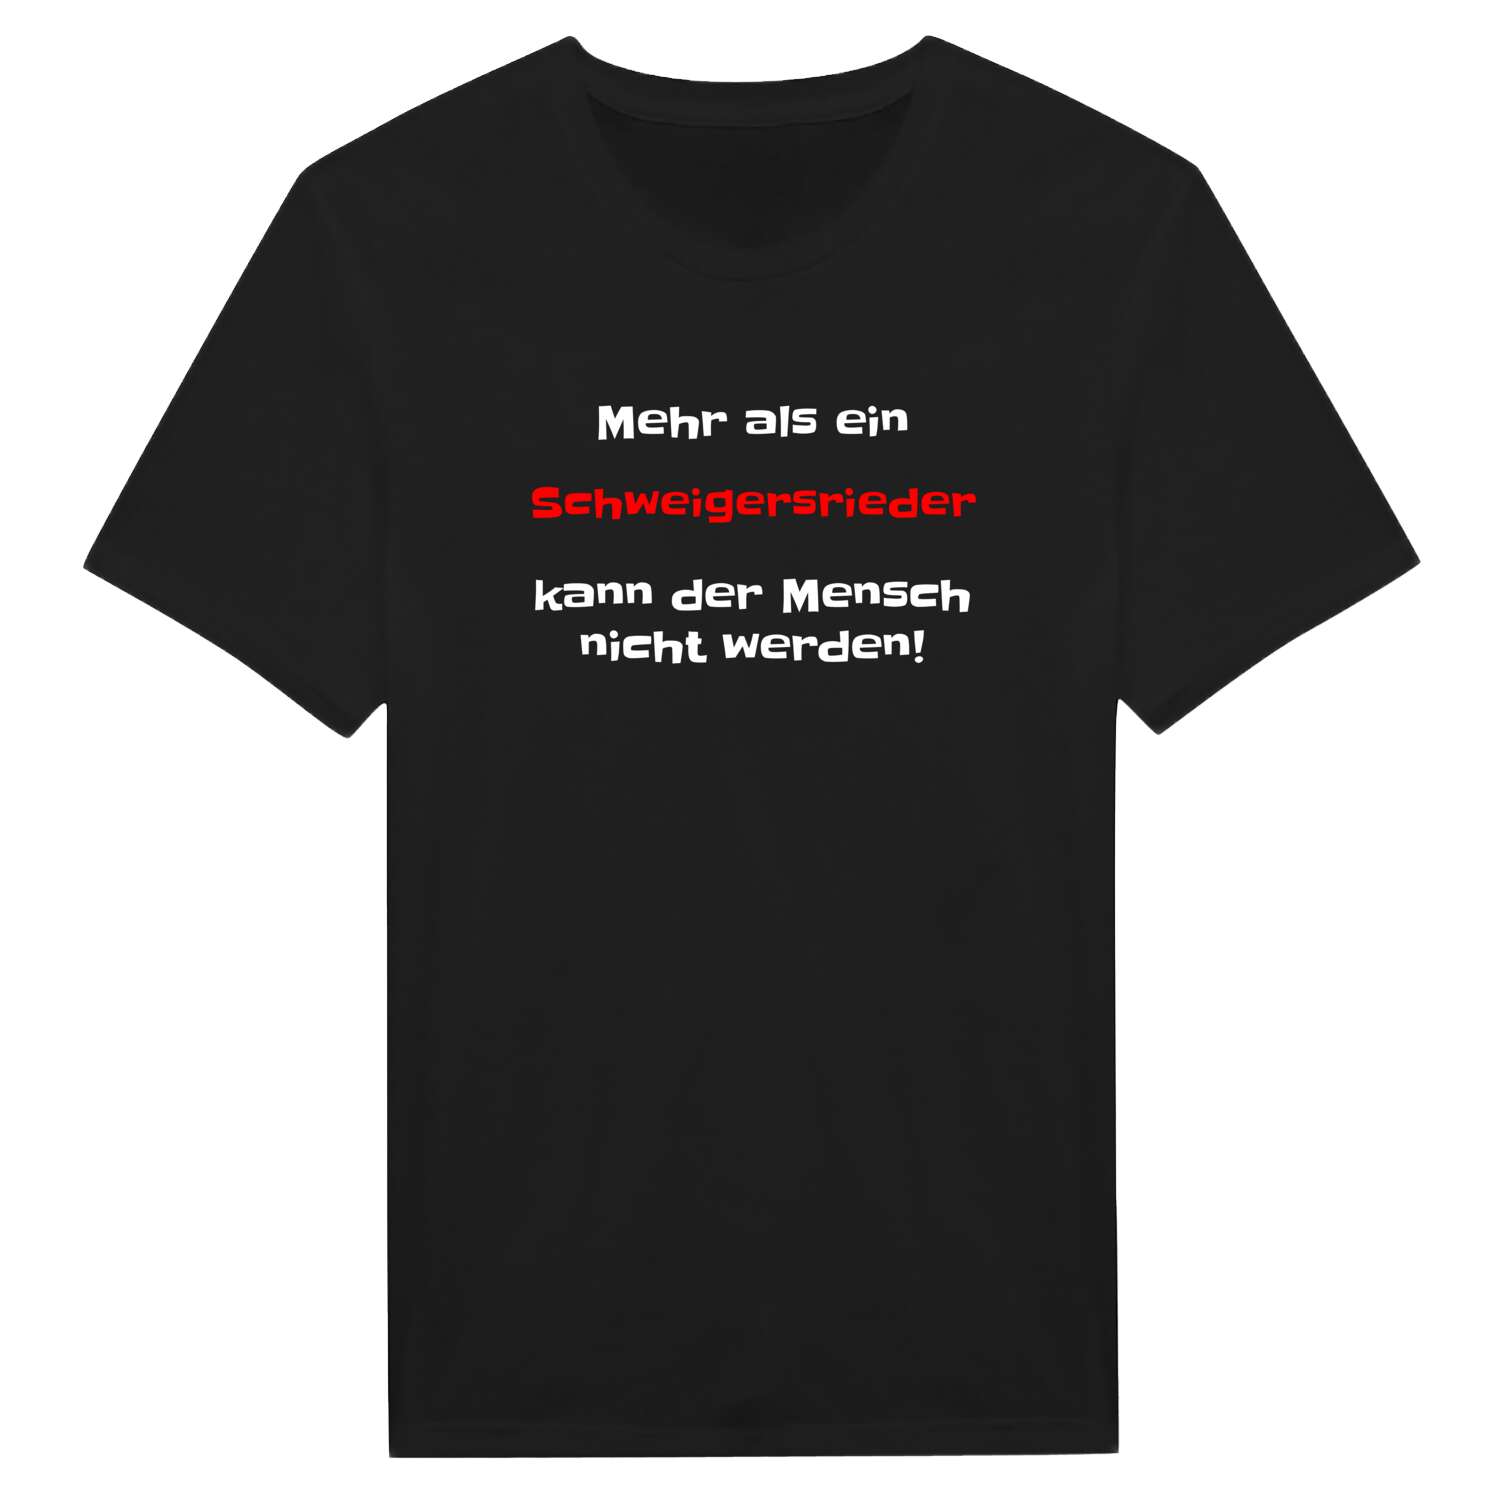 Schweigersried T-Shirt »Mehr als ein«